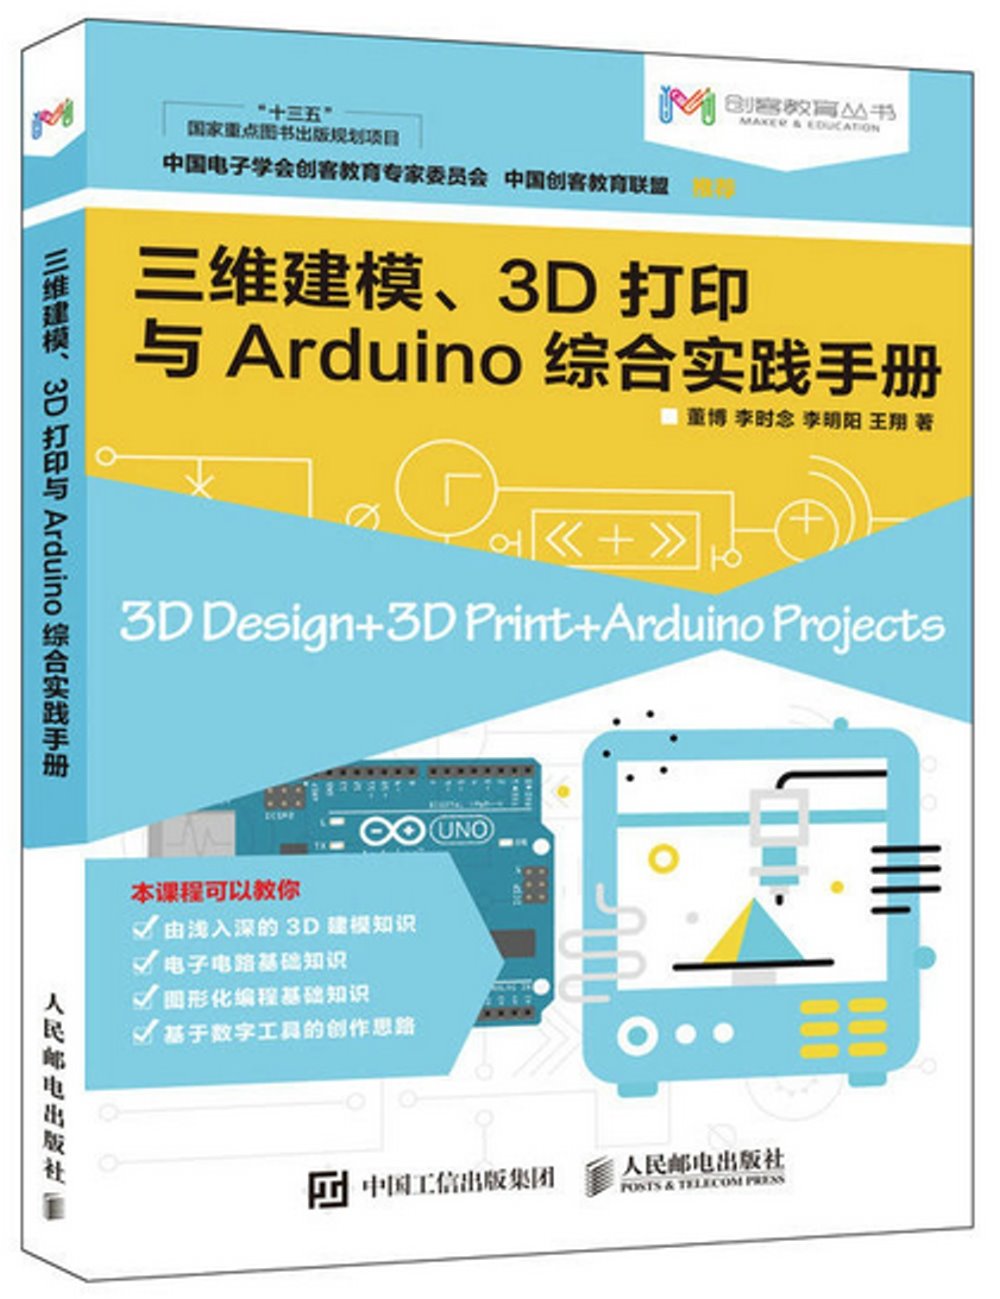 三維建模、3D打印與Arduino綜合實踐手冊